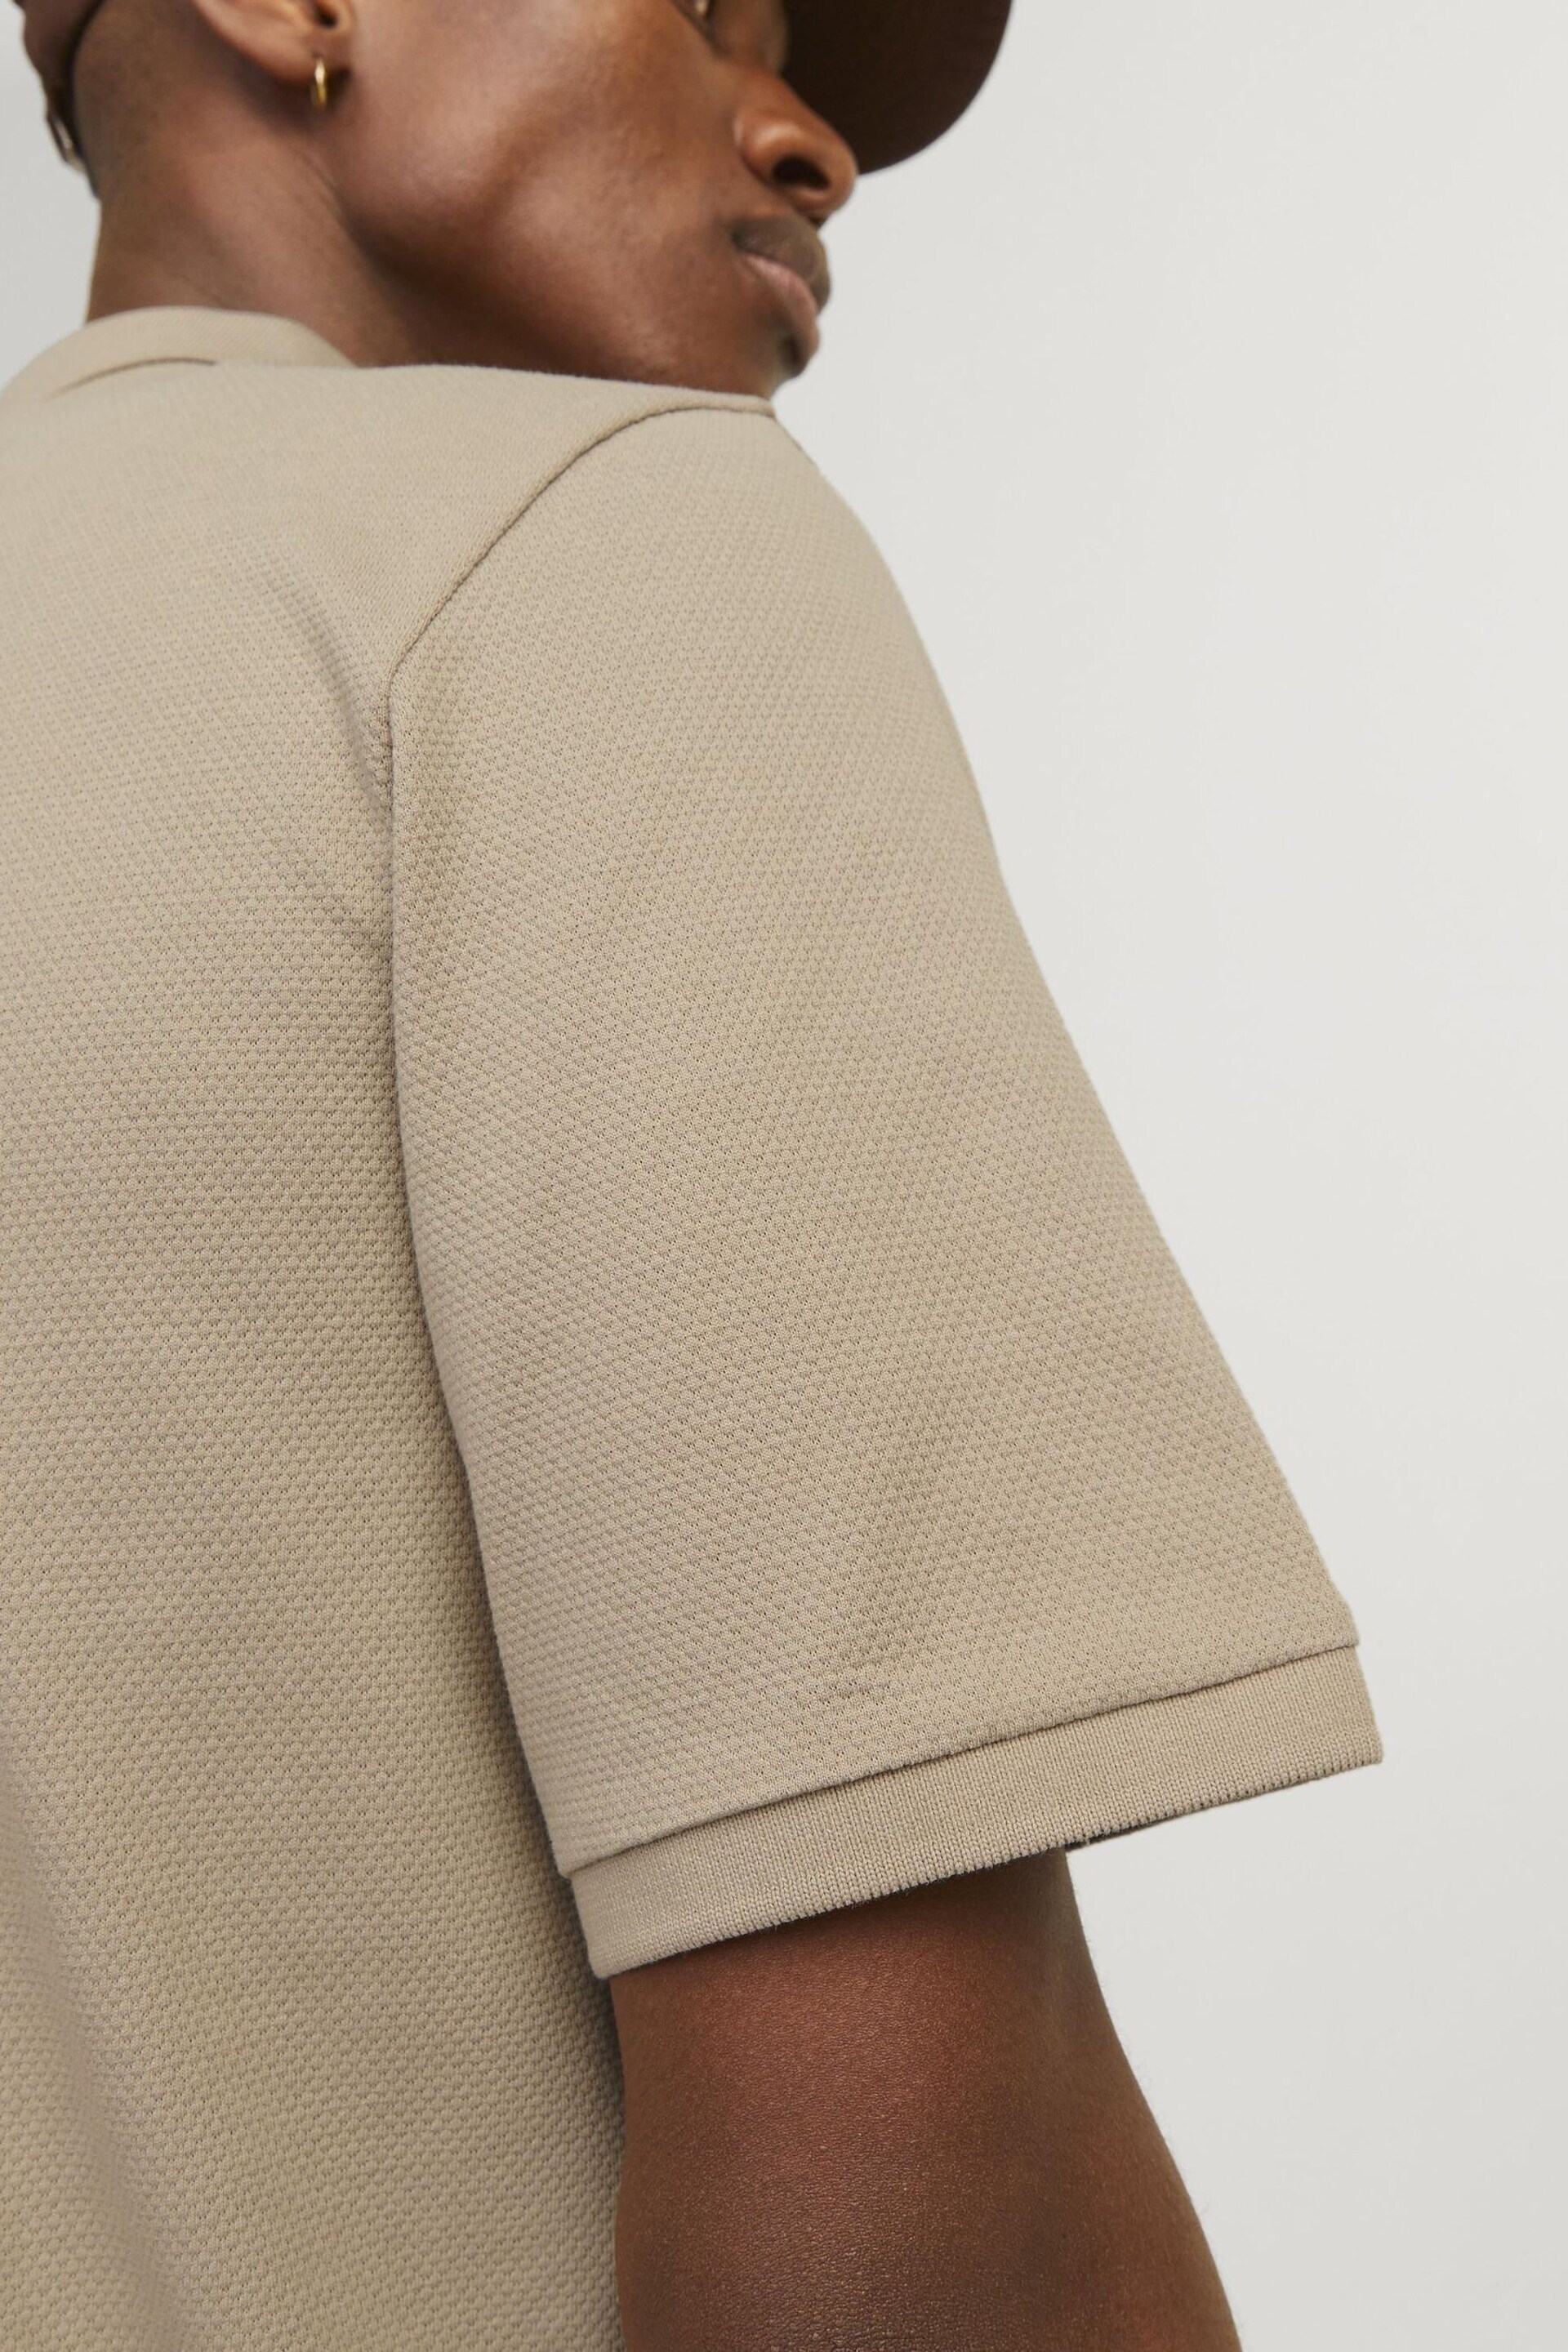 JACK & JONES Brown Textured Zip Up Polo Shirt - Image 4 of 5